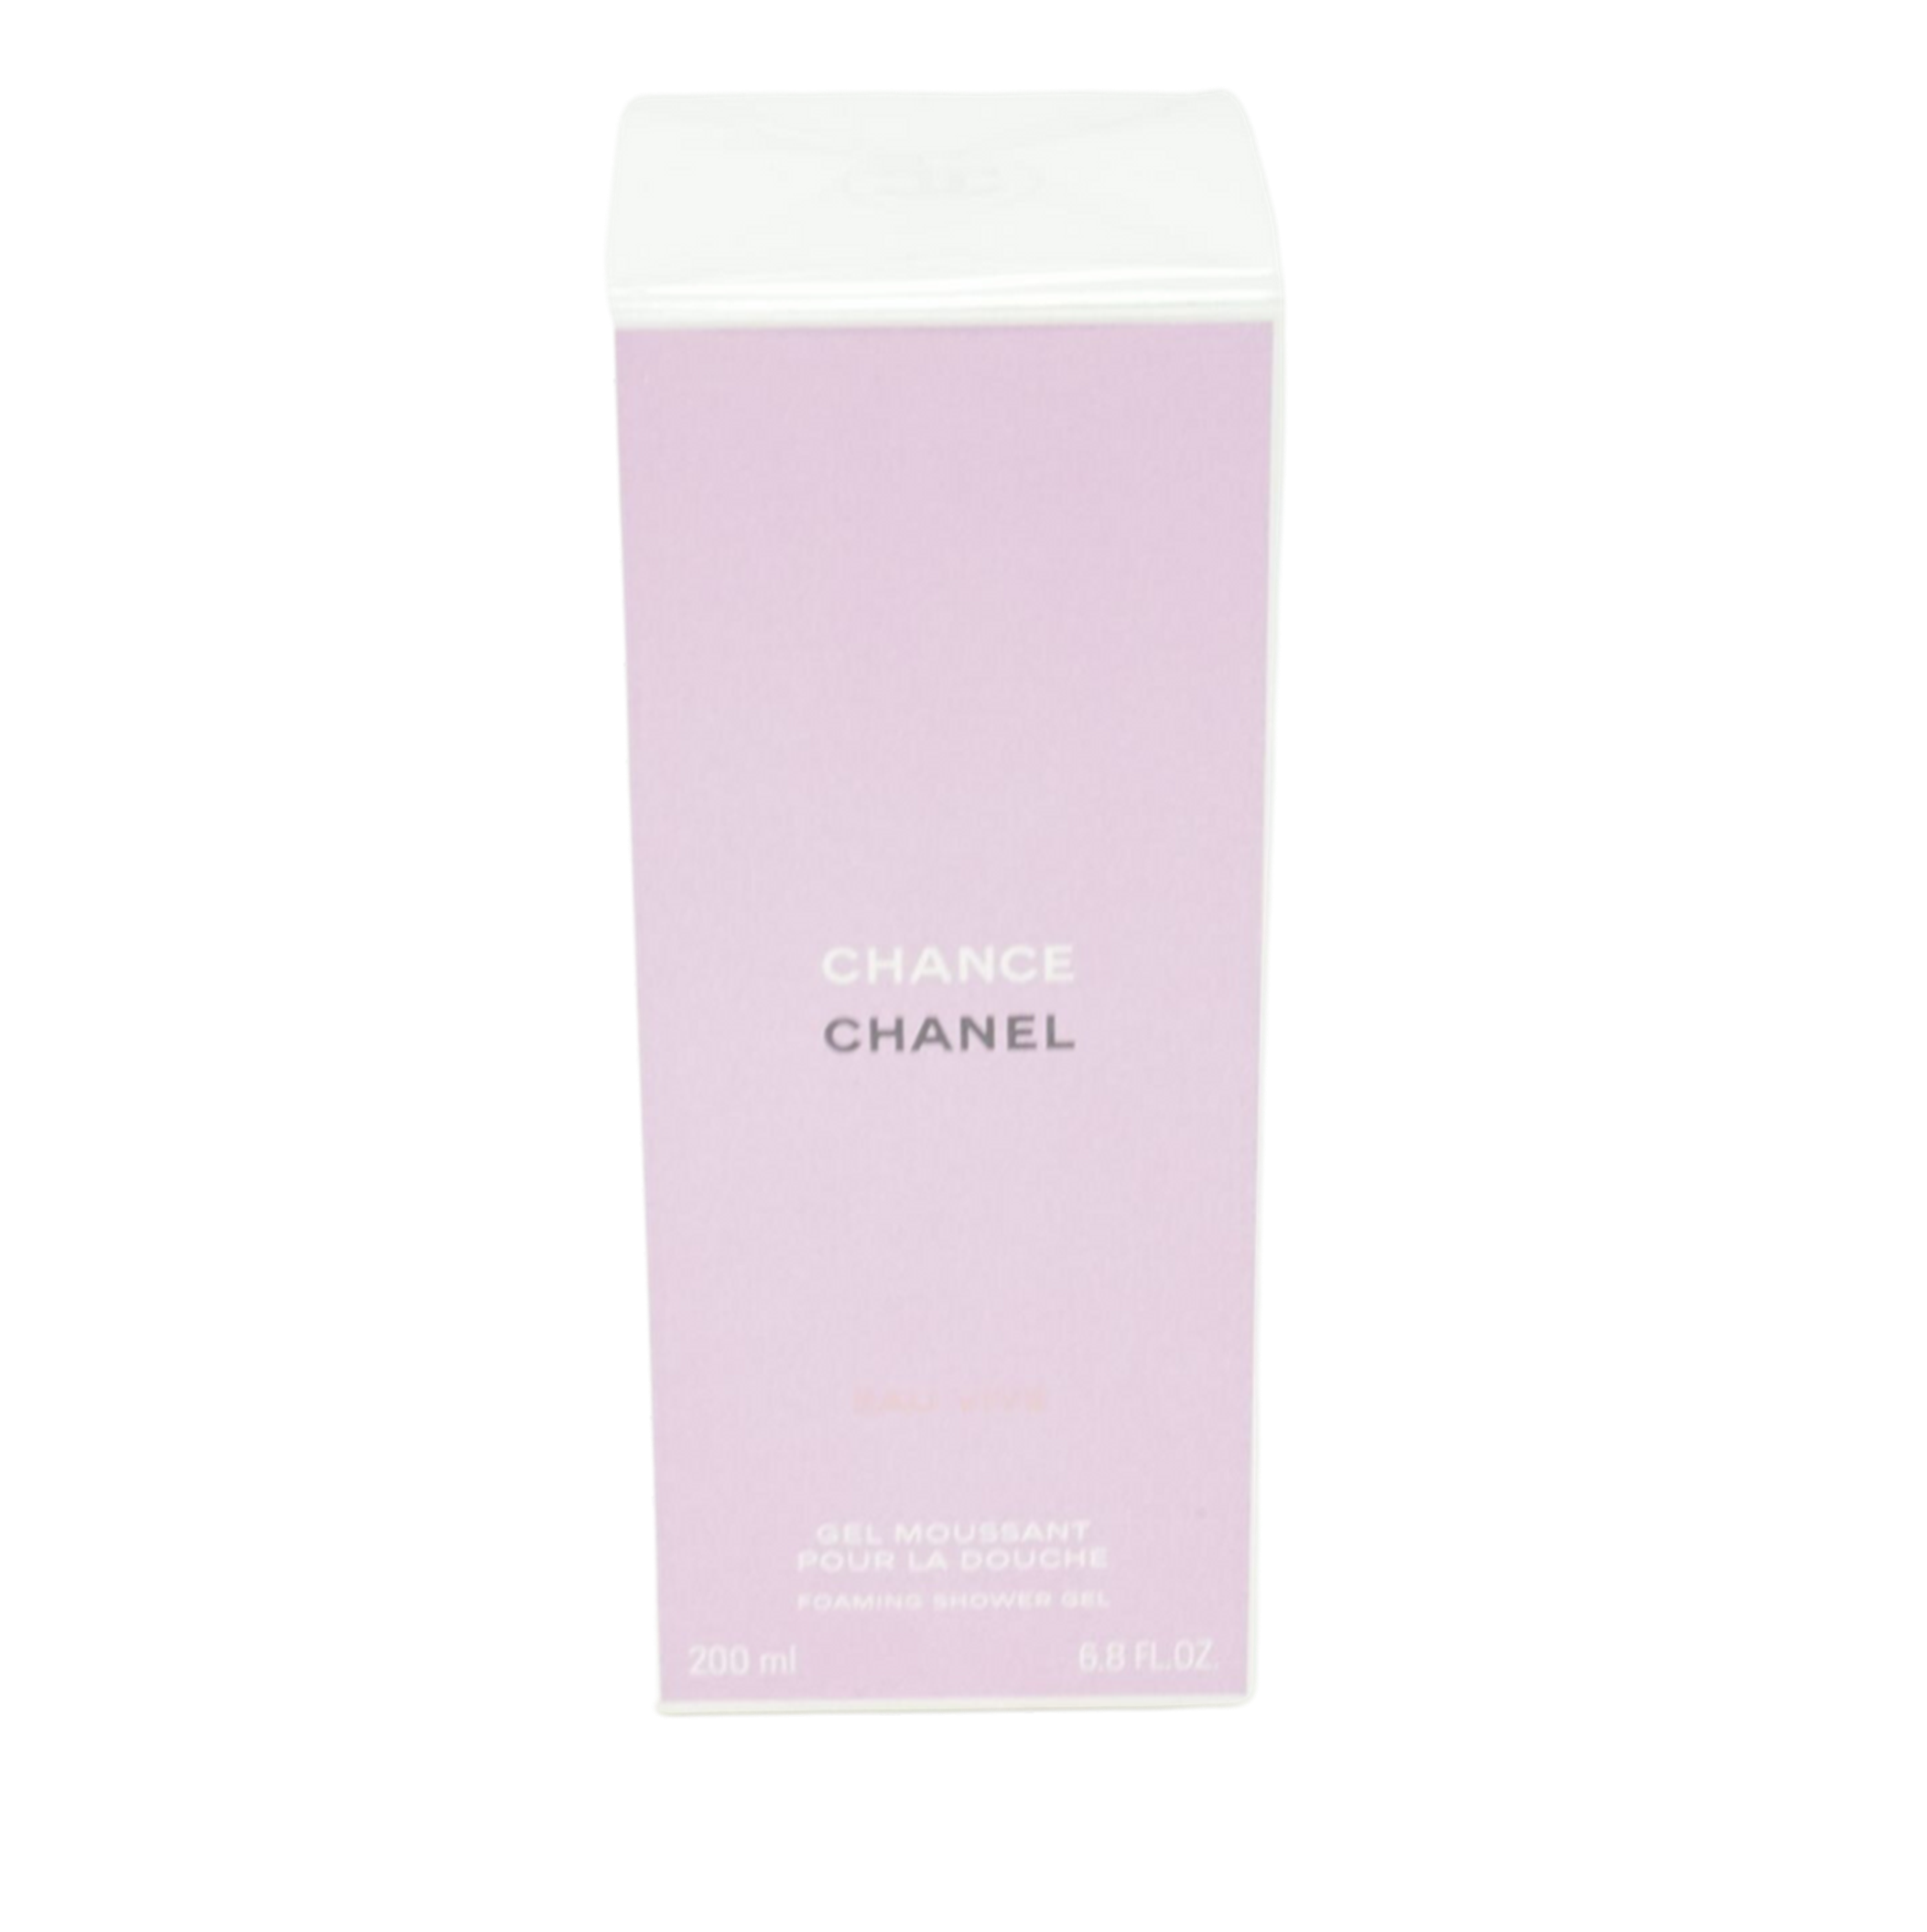 Chanel Chance Eau Vive Foaming Shower Gel 200 ml